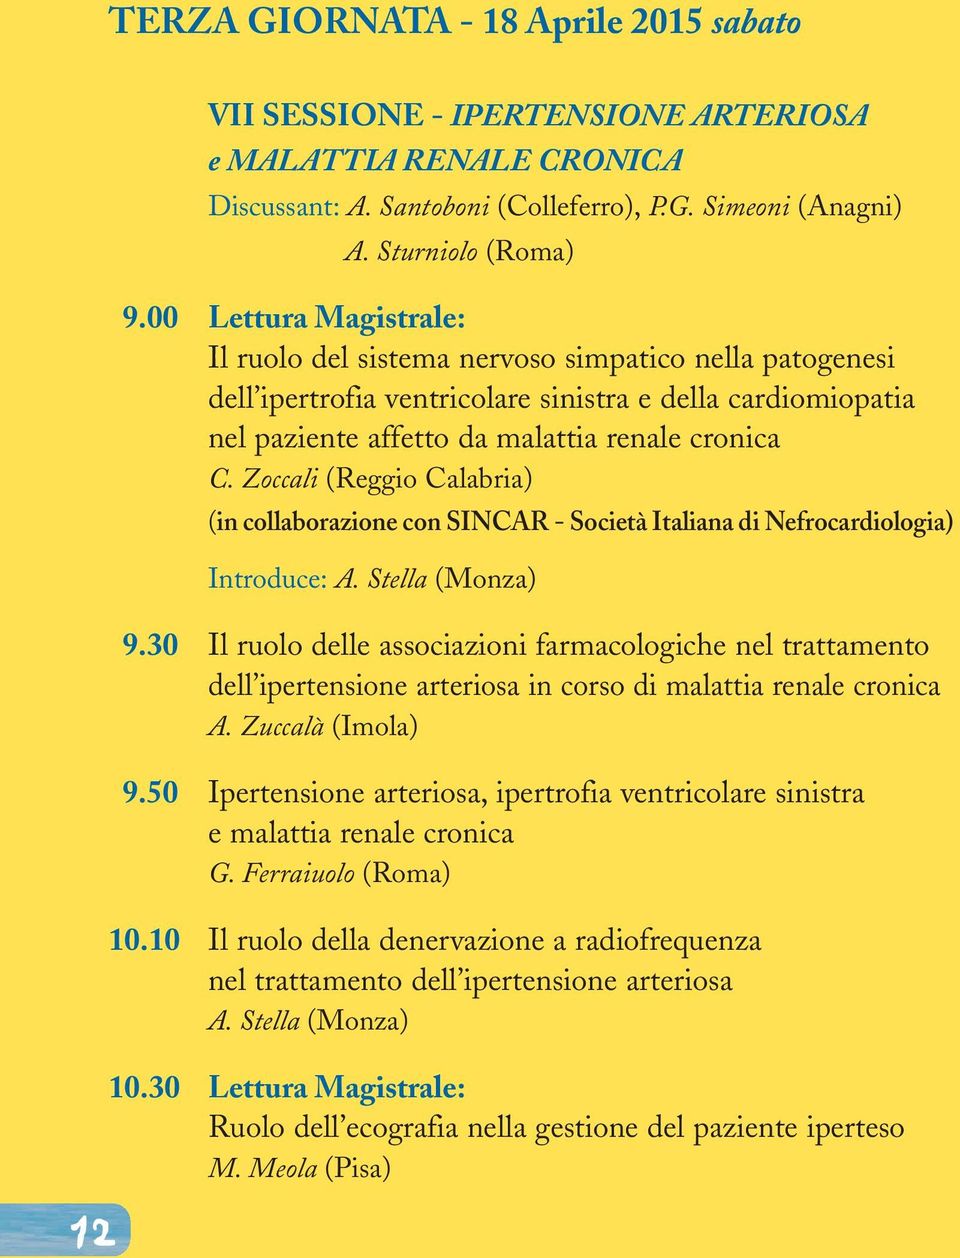 Zoccali (Reggio Calabria) (in collaborazione con SINCAR - Società Italiana di Nefrocardiologia) Introduce: A. Stella (Monza) 9.